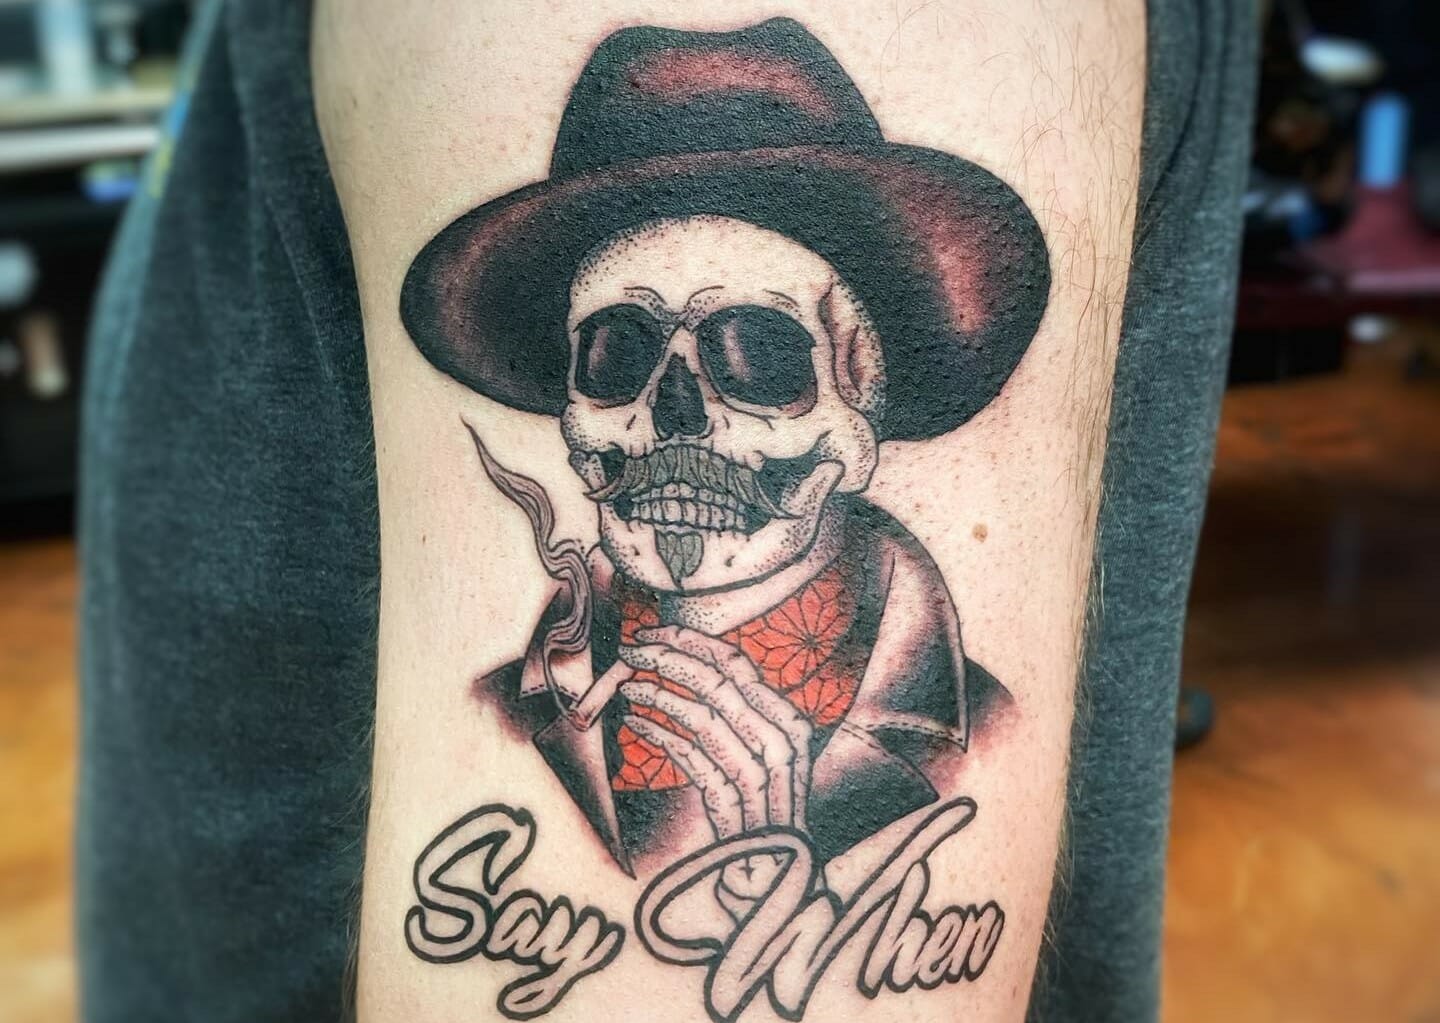 Wyatt Earp Cowboy Lawman Country Western Temporary Tattoos  Zazzle